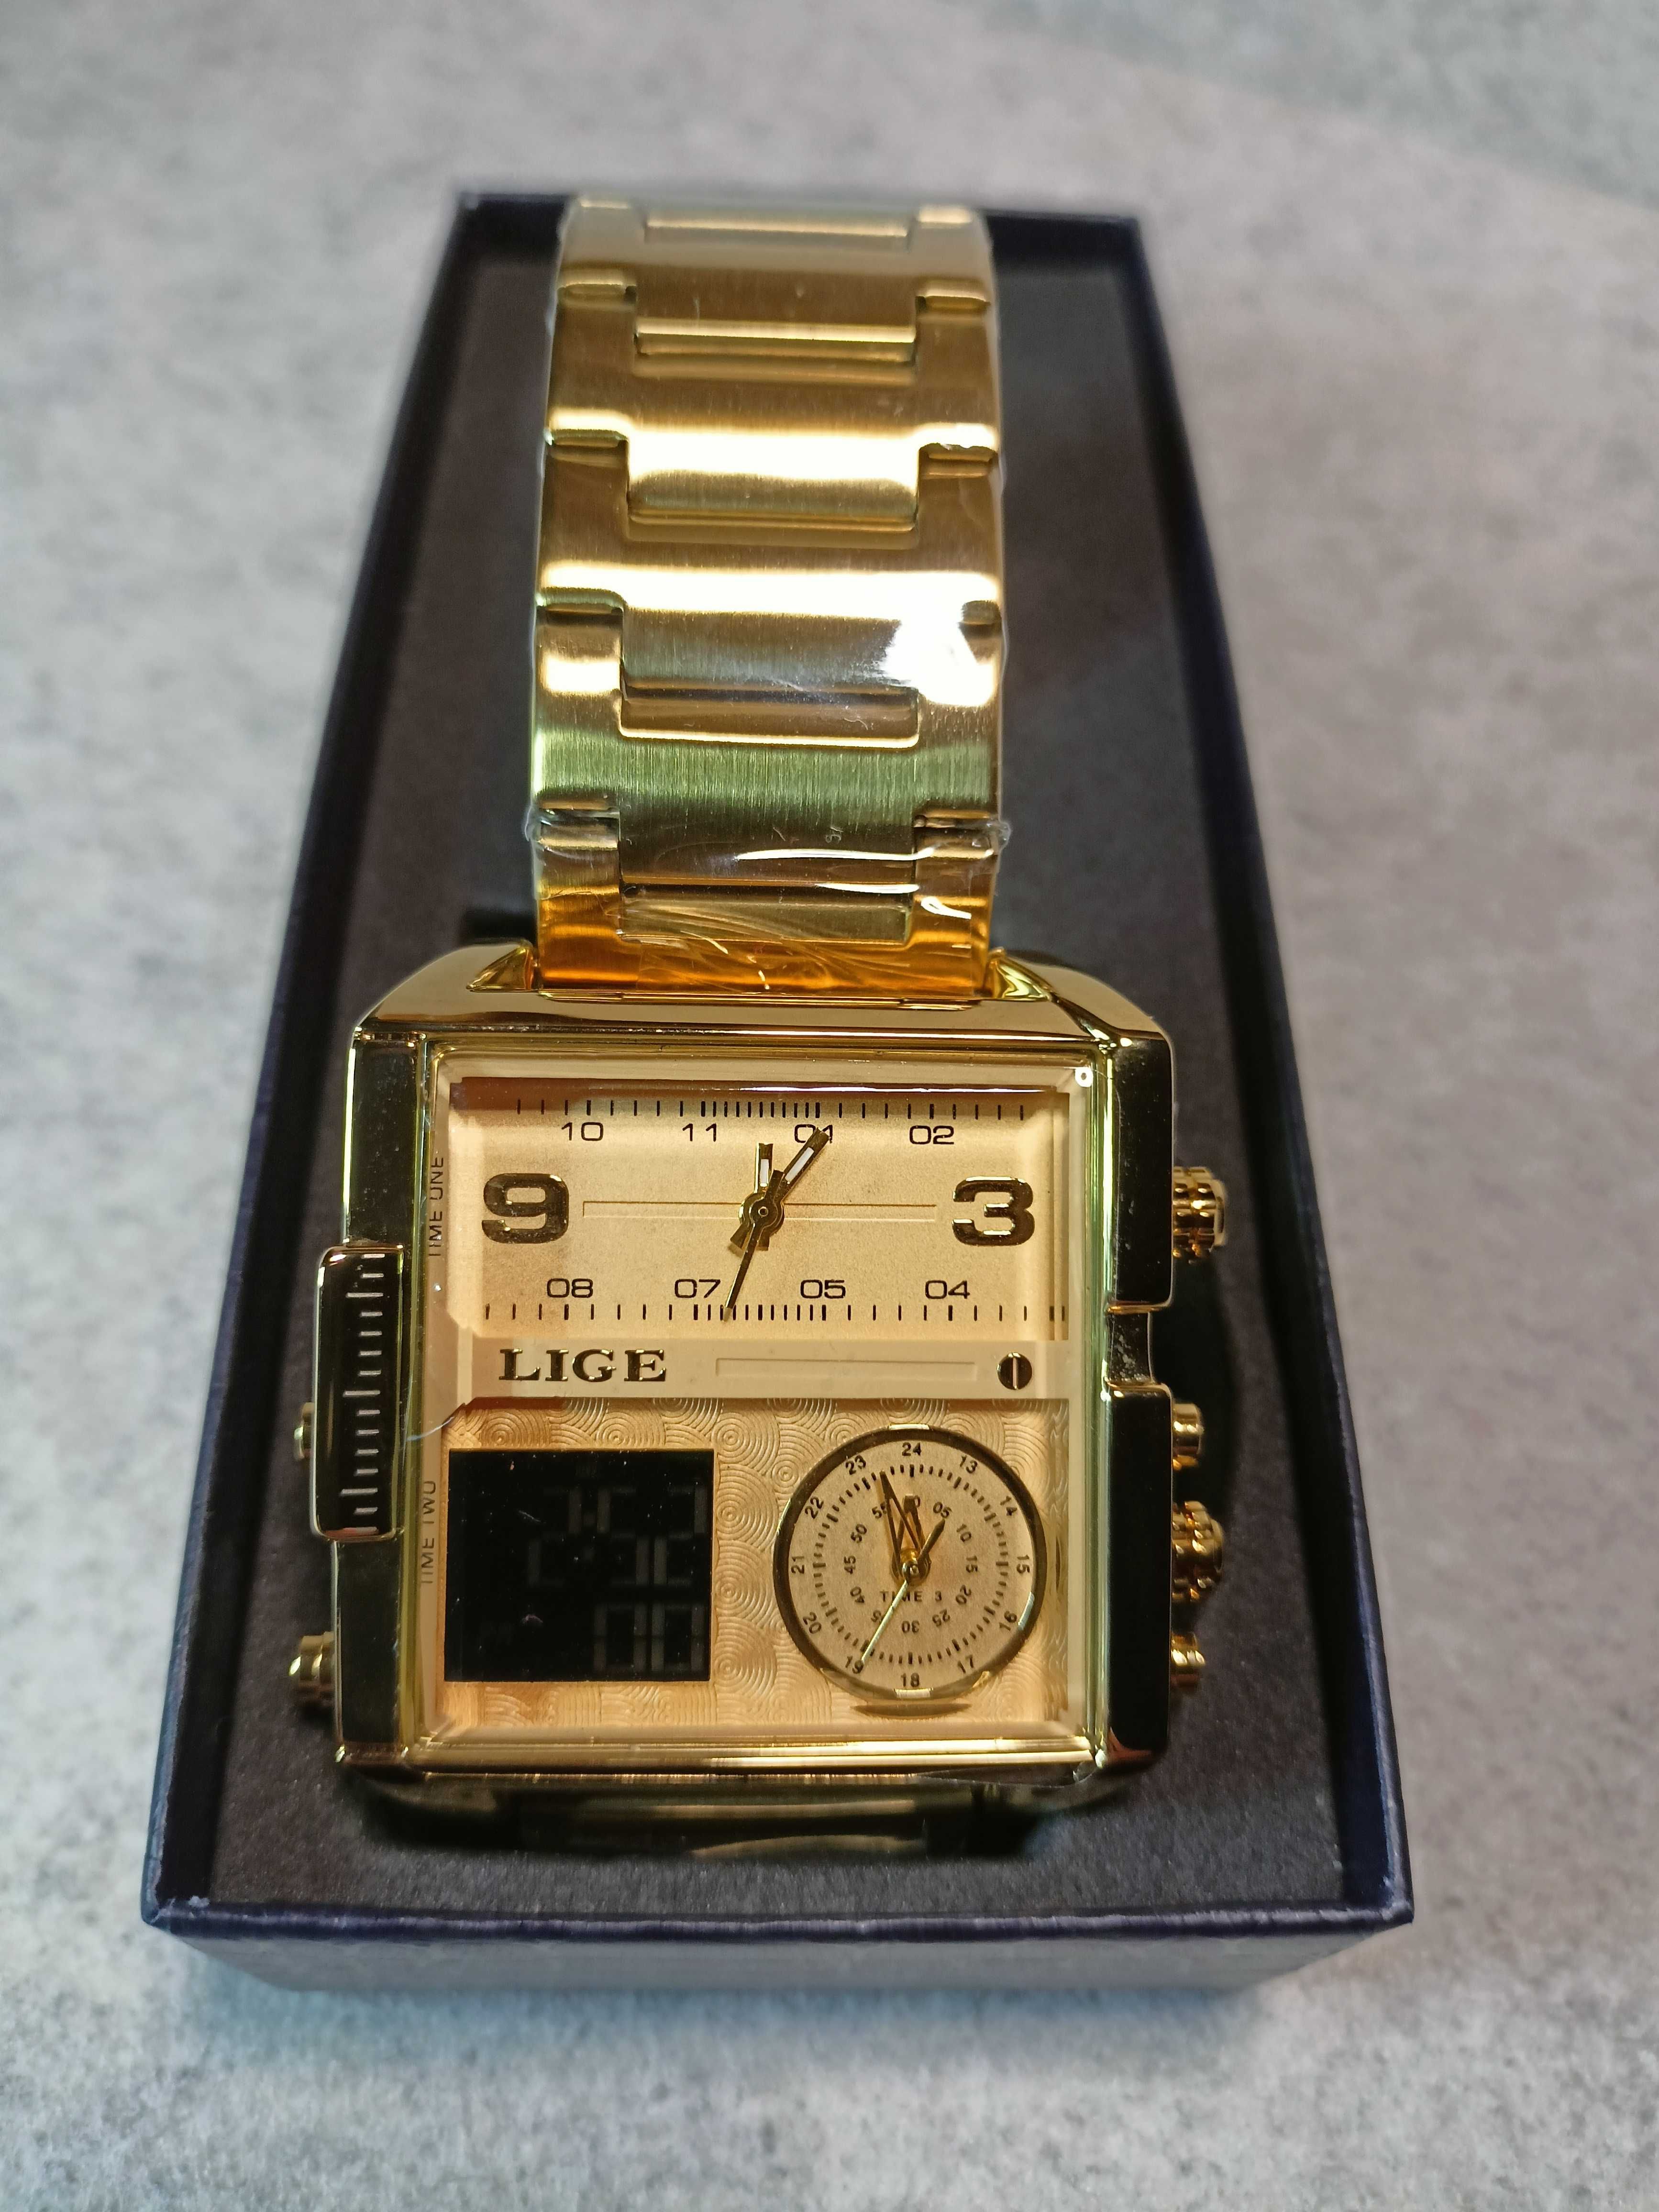 Złoty zegarek męski kwadrat. 2 tarcze analogowe + zegar cyfrowy.